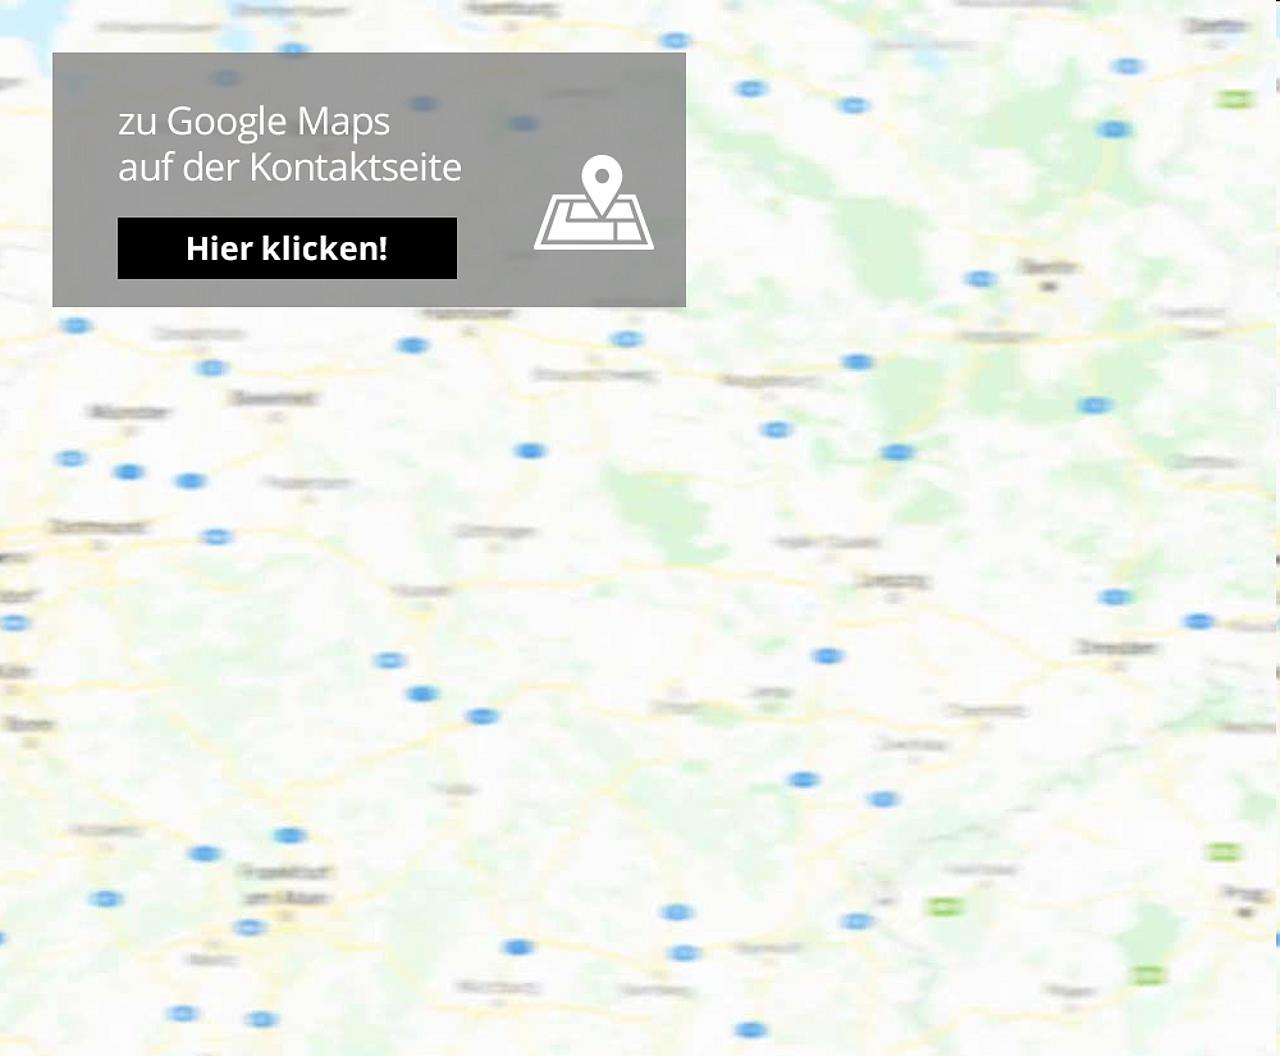 Link zur interaktiven Karte Hamburg, Schenefeld, Wedel, Pinneberg, Rellingen, Halstenbek, Holm